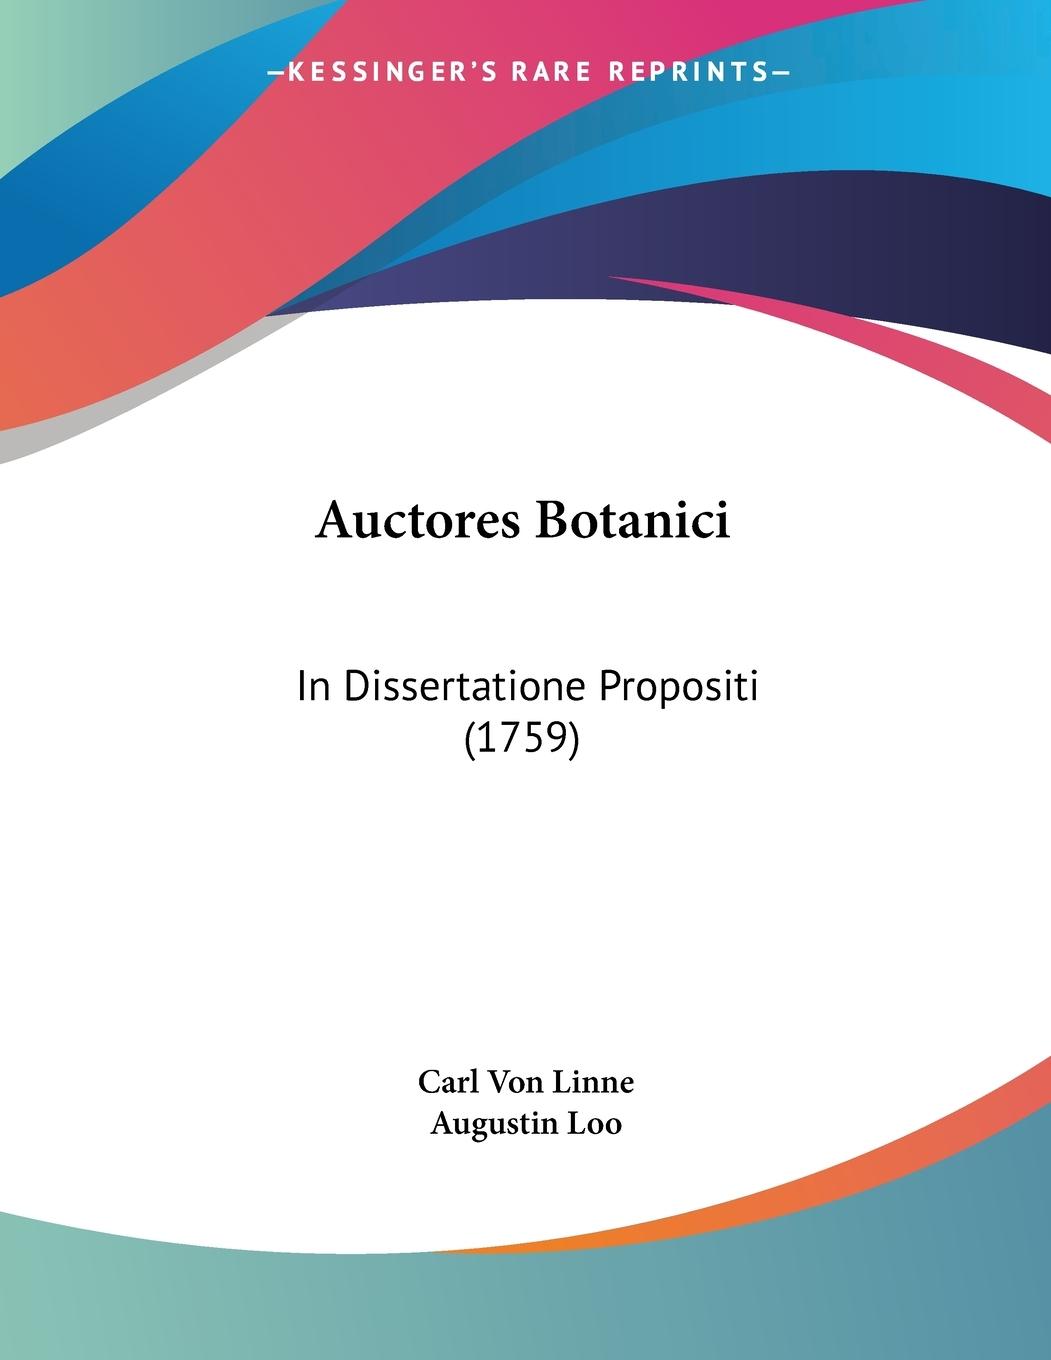 Auctores Botanici - Linne, Carl Von Loo, Augustin